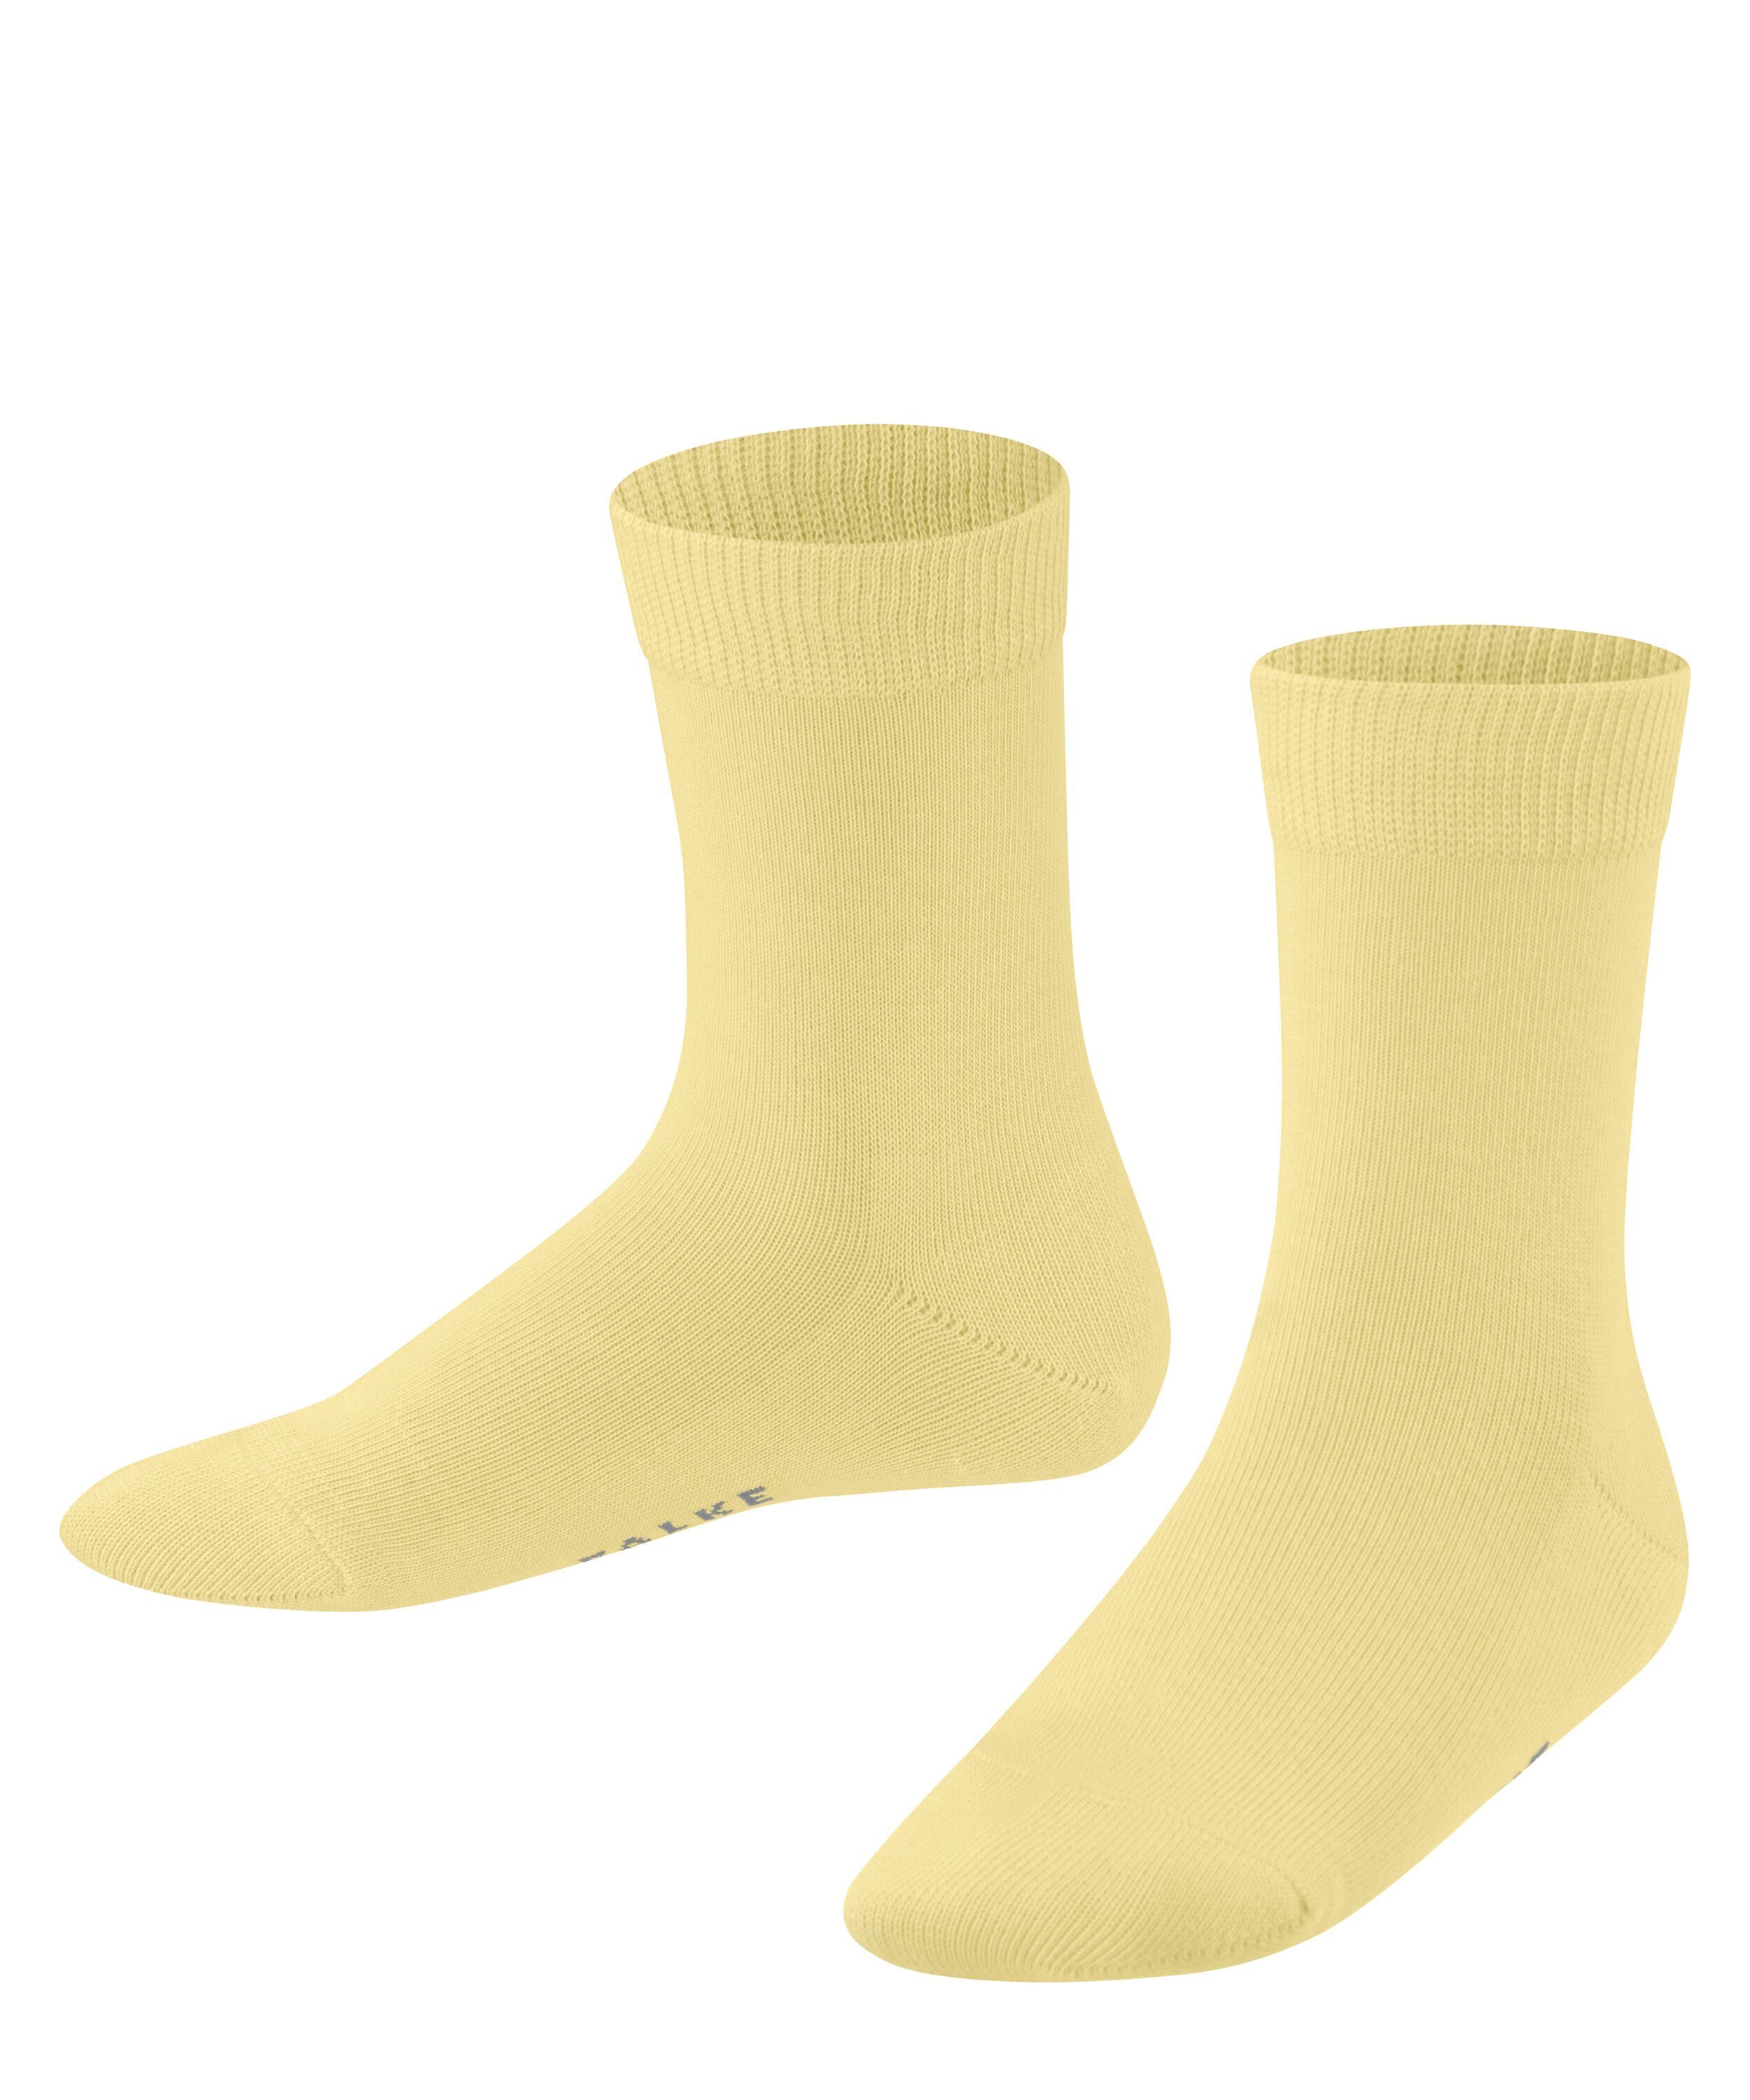 (1105) (1-Paar) FALKE Family Socken hay